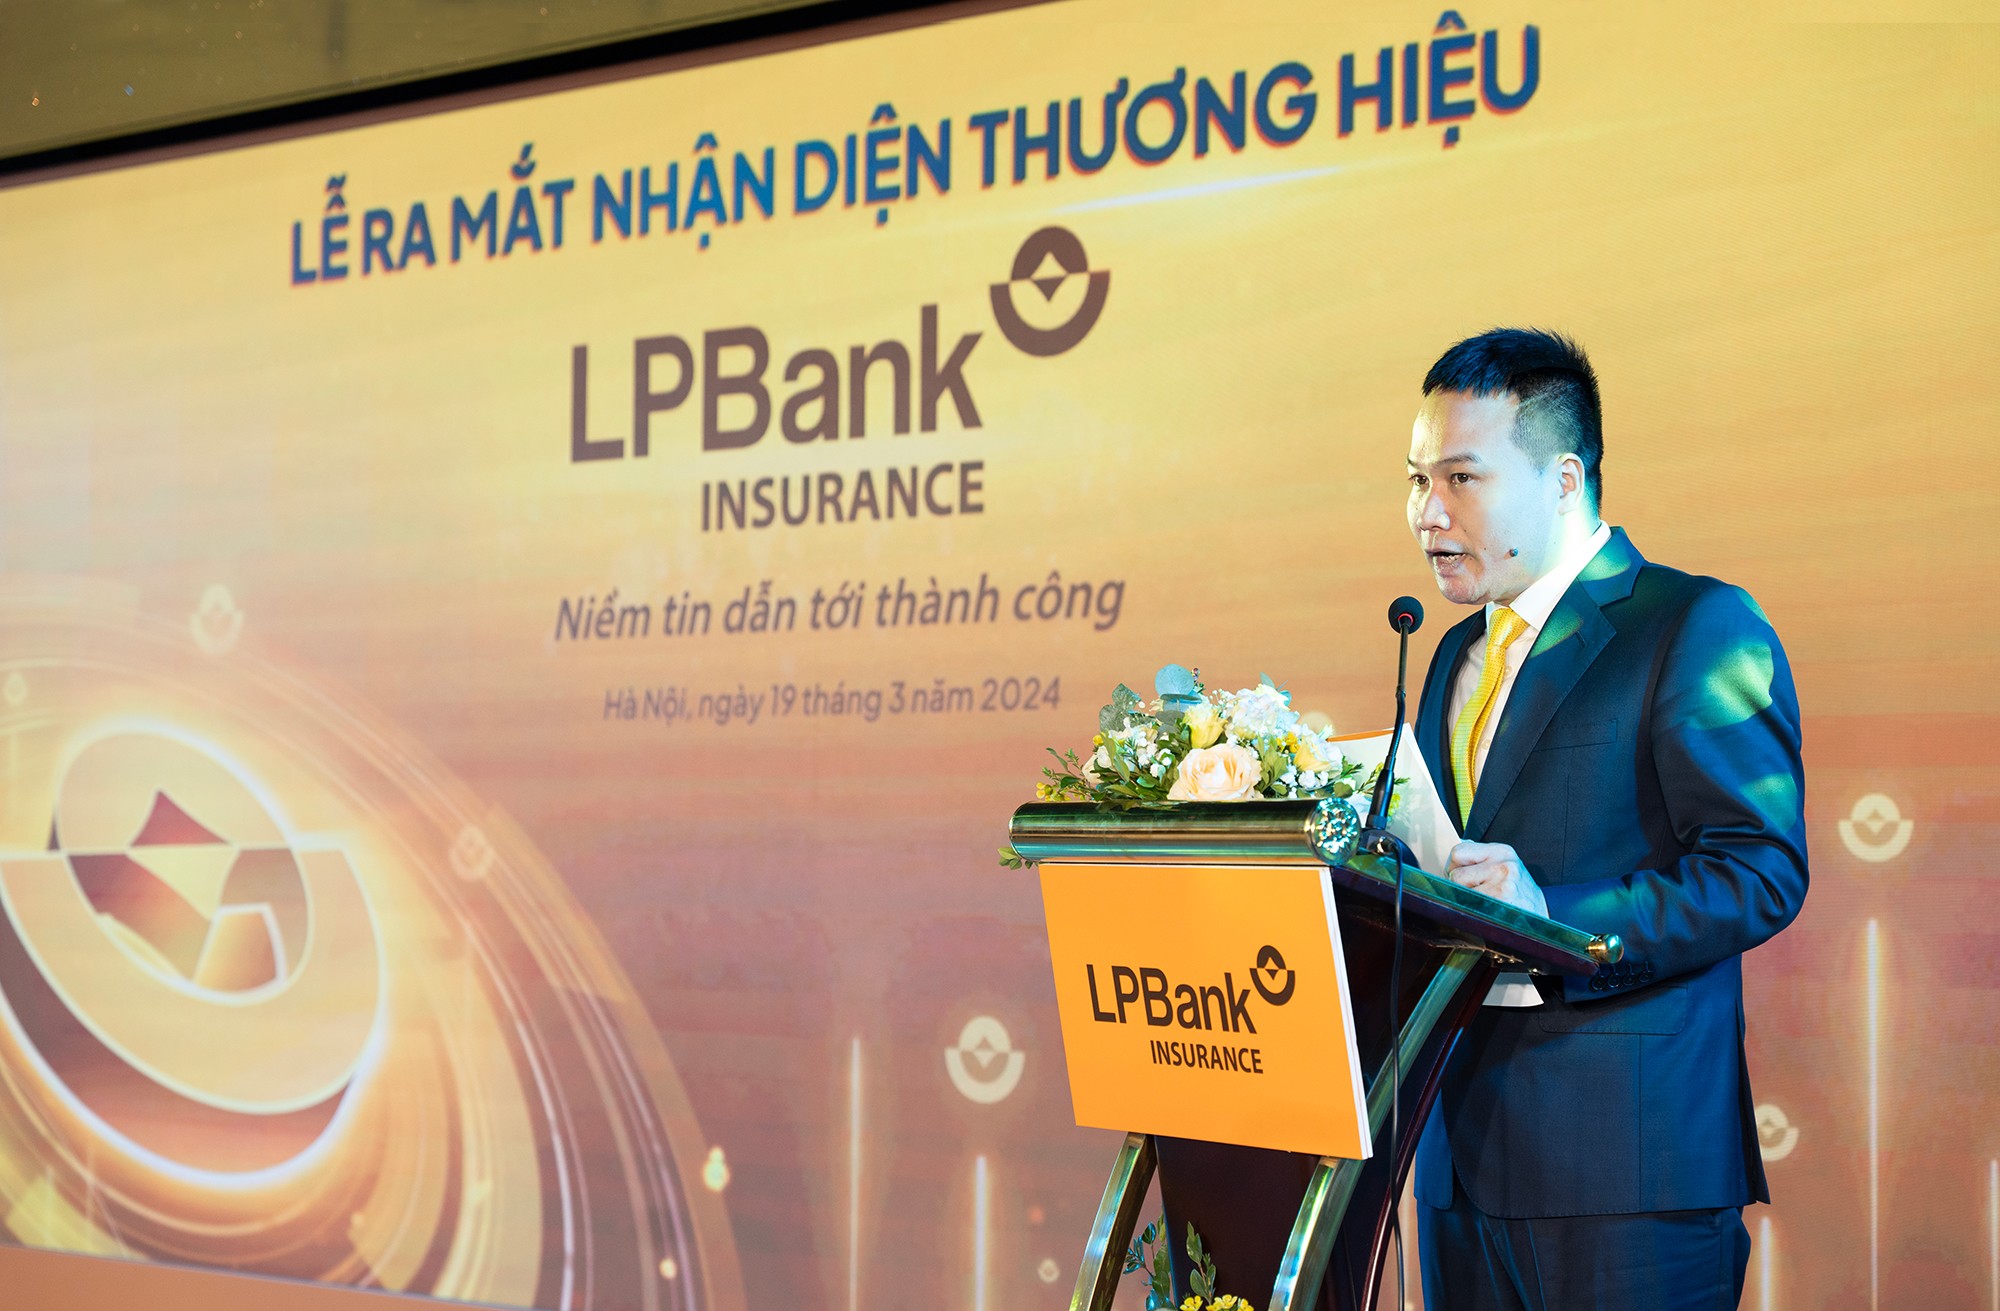 Ông Dương Văn Đạt – Tổng Giám đốc Tổng CTCP Bảo hiểm LPBank khẳng định việc thay đổi và ra mắt nhận diện thương hiệu mới sẽ giúp doanh nghiệp bứt phá hơn trong thời gian tới.